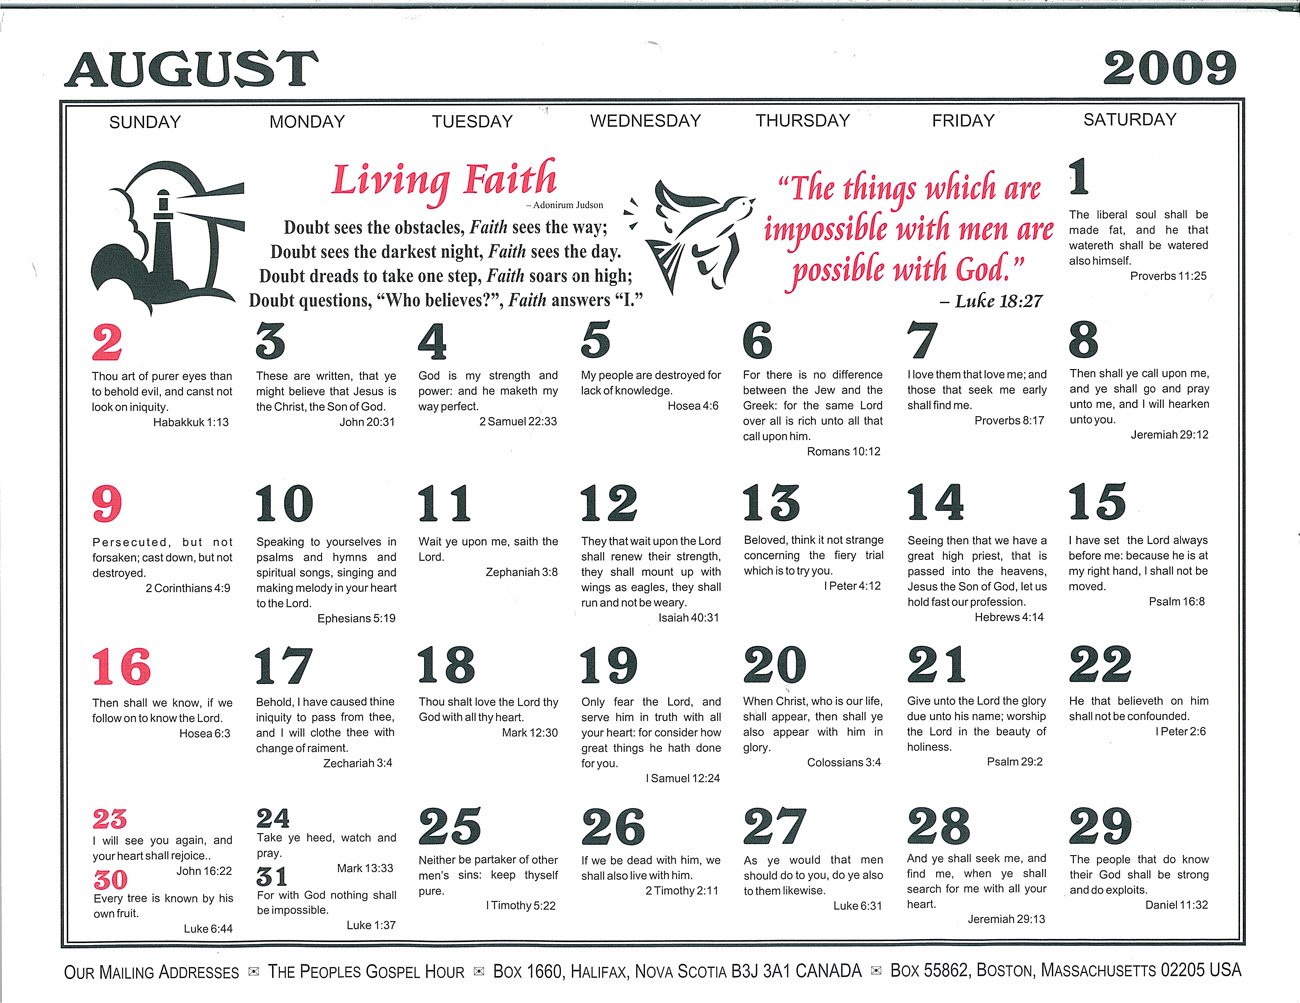 August: 2009 Daily Bible Text Calendar